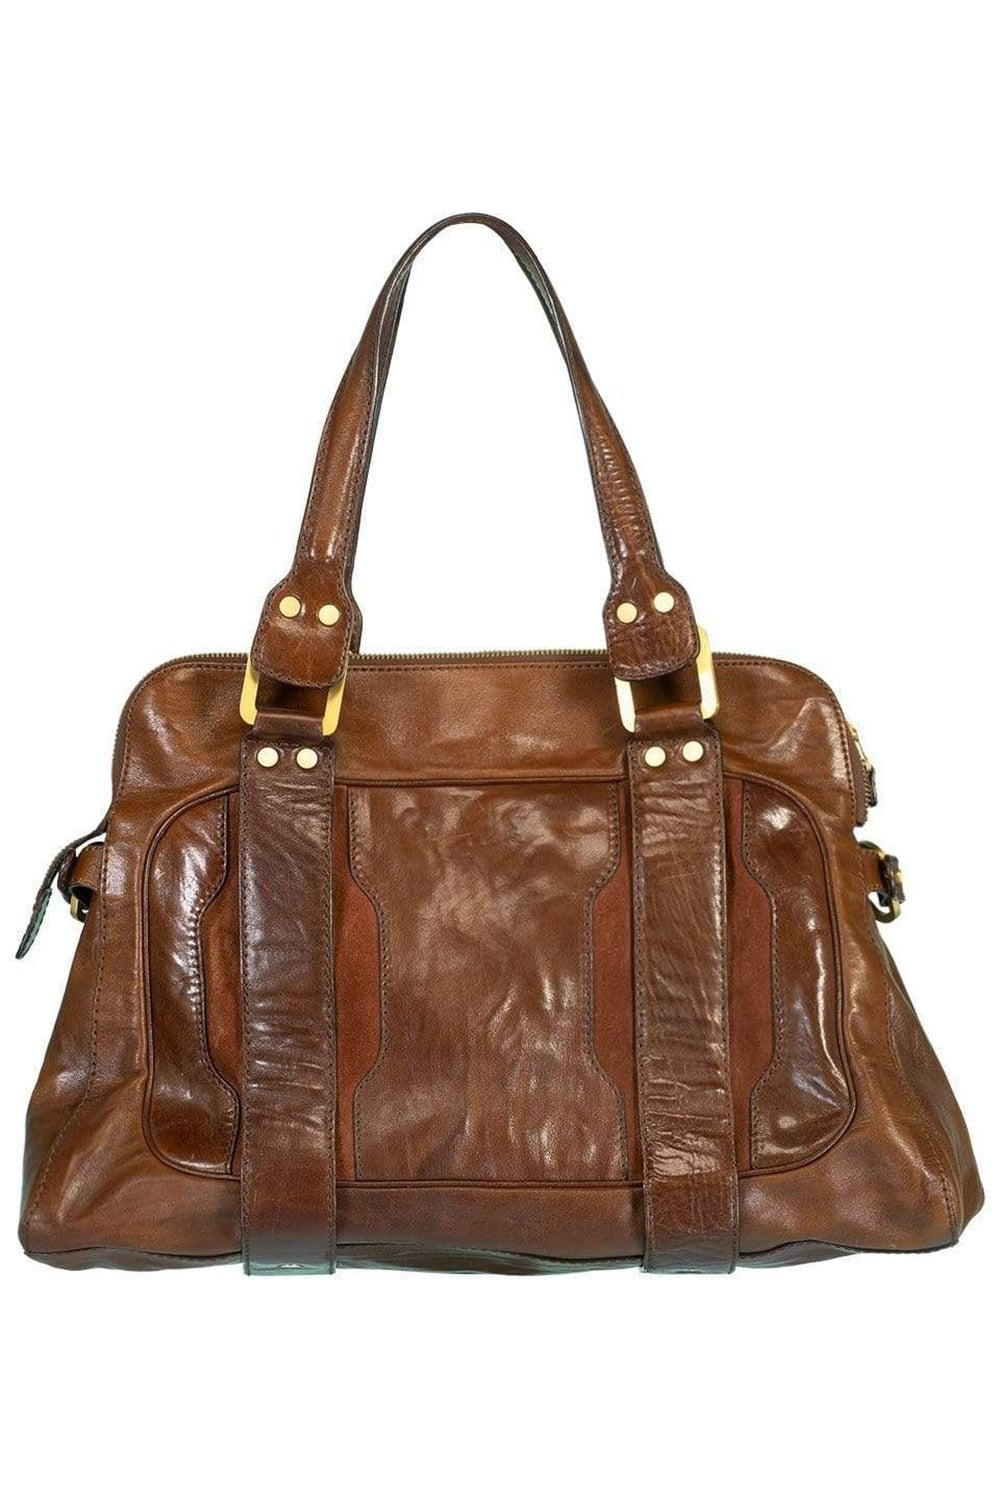 JIMMY CHOO-Distressed Brown Leather Bag-BROWN